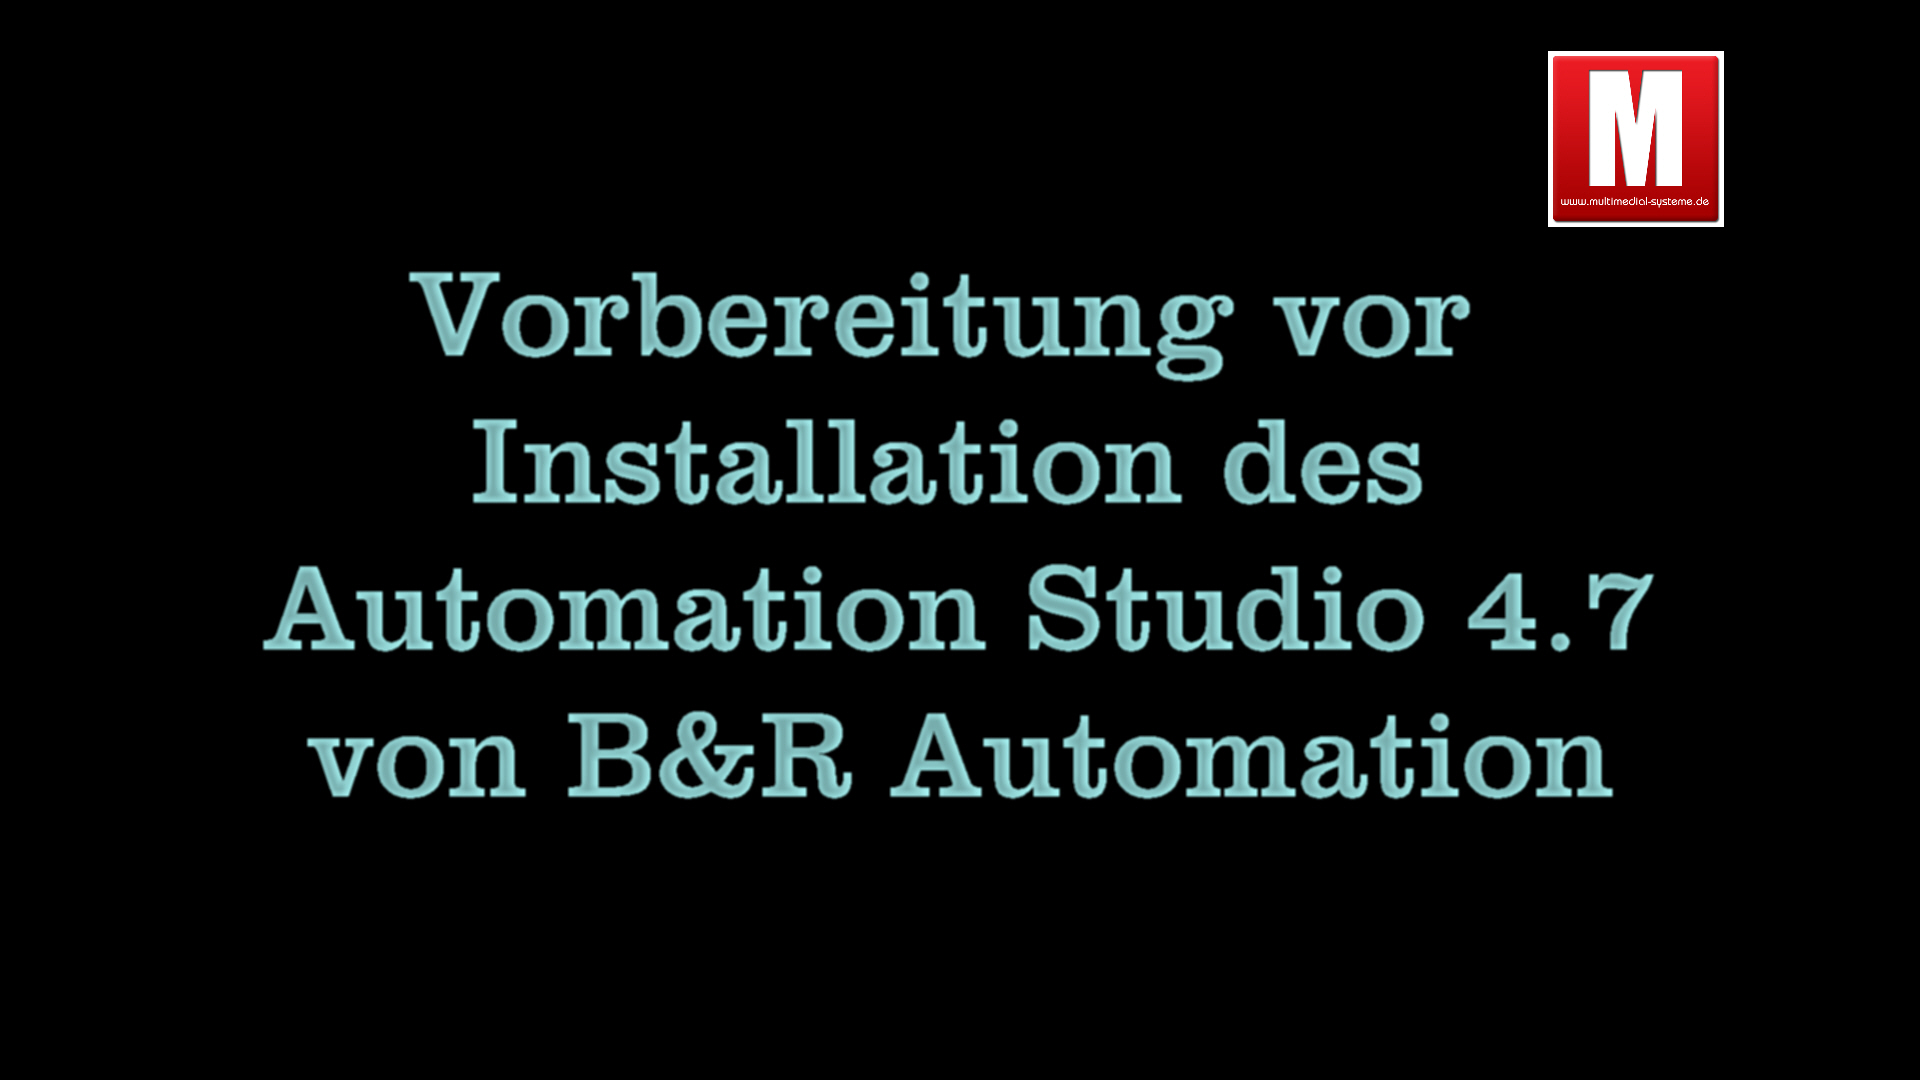 You are currently viewing Video 1 Was vor der Installation des B&R Automation Studios 4.7 zu erledigen ist (Vorbereitung)